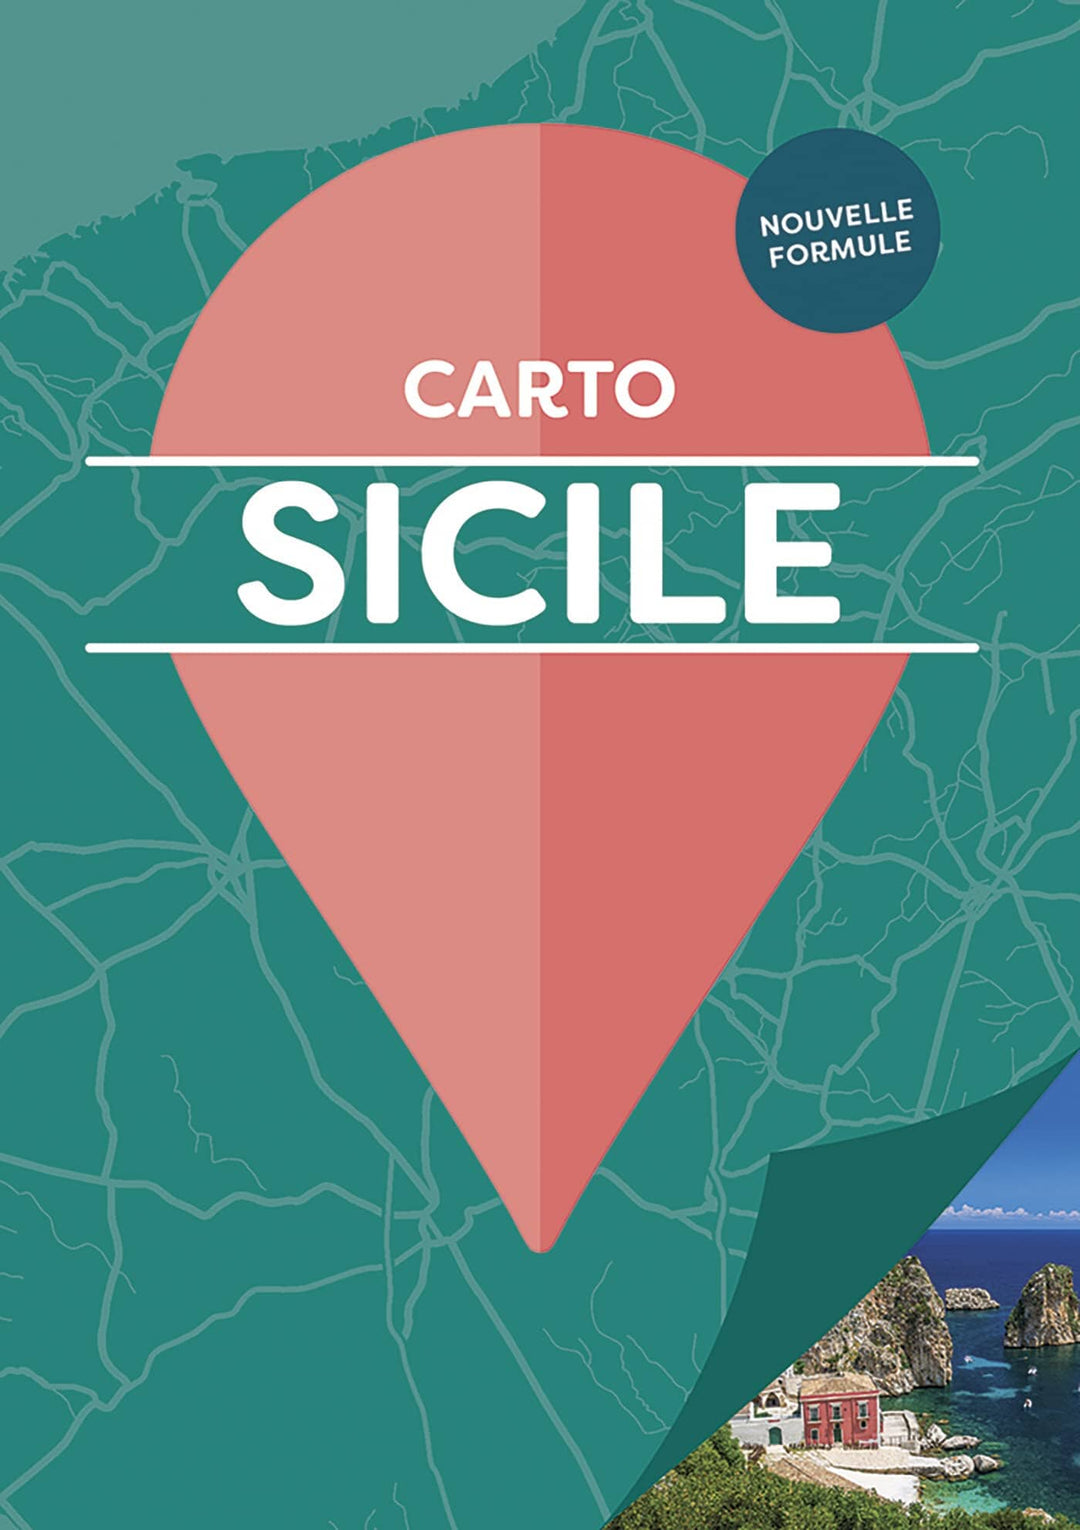 Carnet de poche de cartes détaillées - Sicile | Cartoville carte pliée Gallimard 